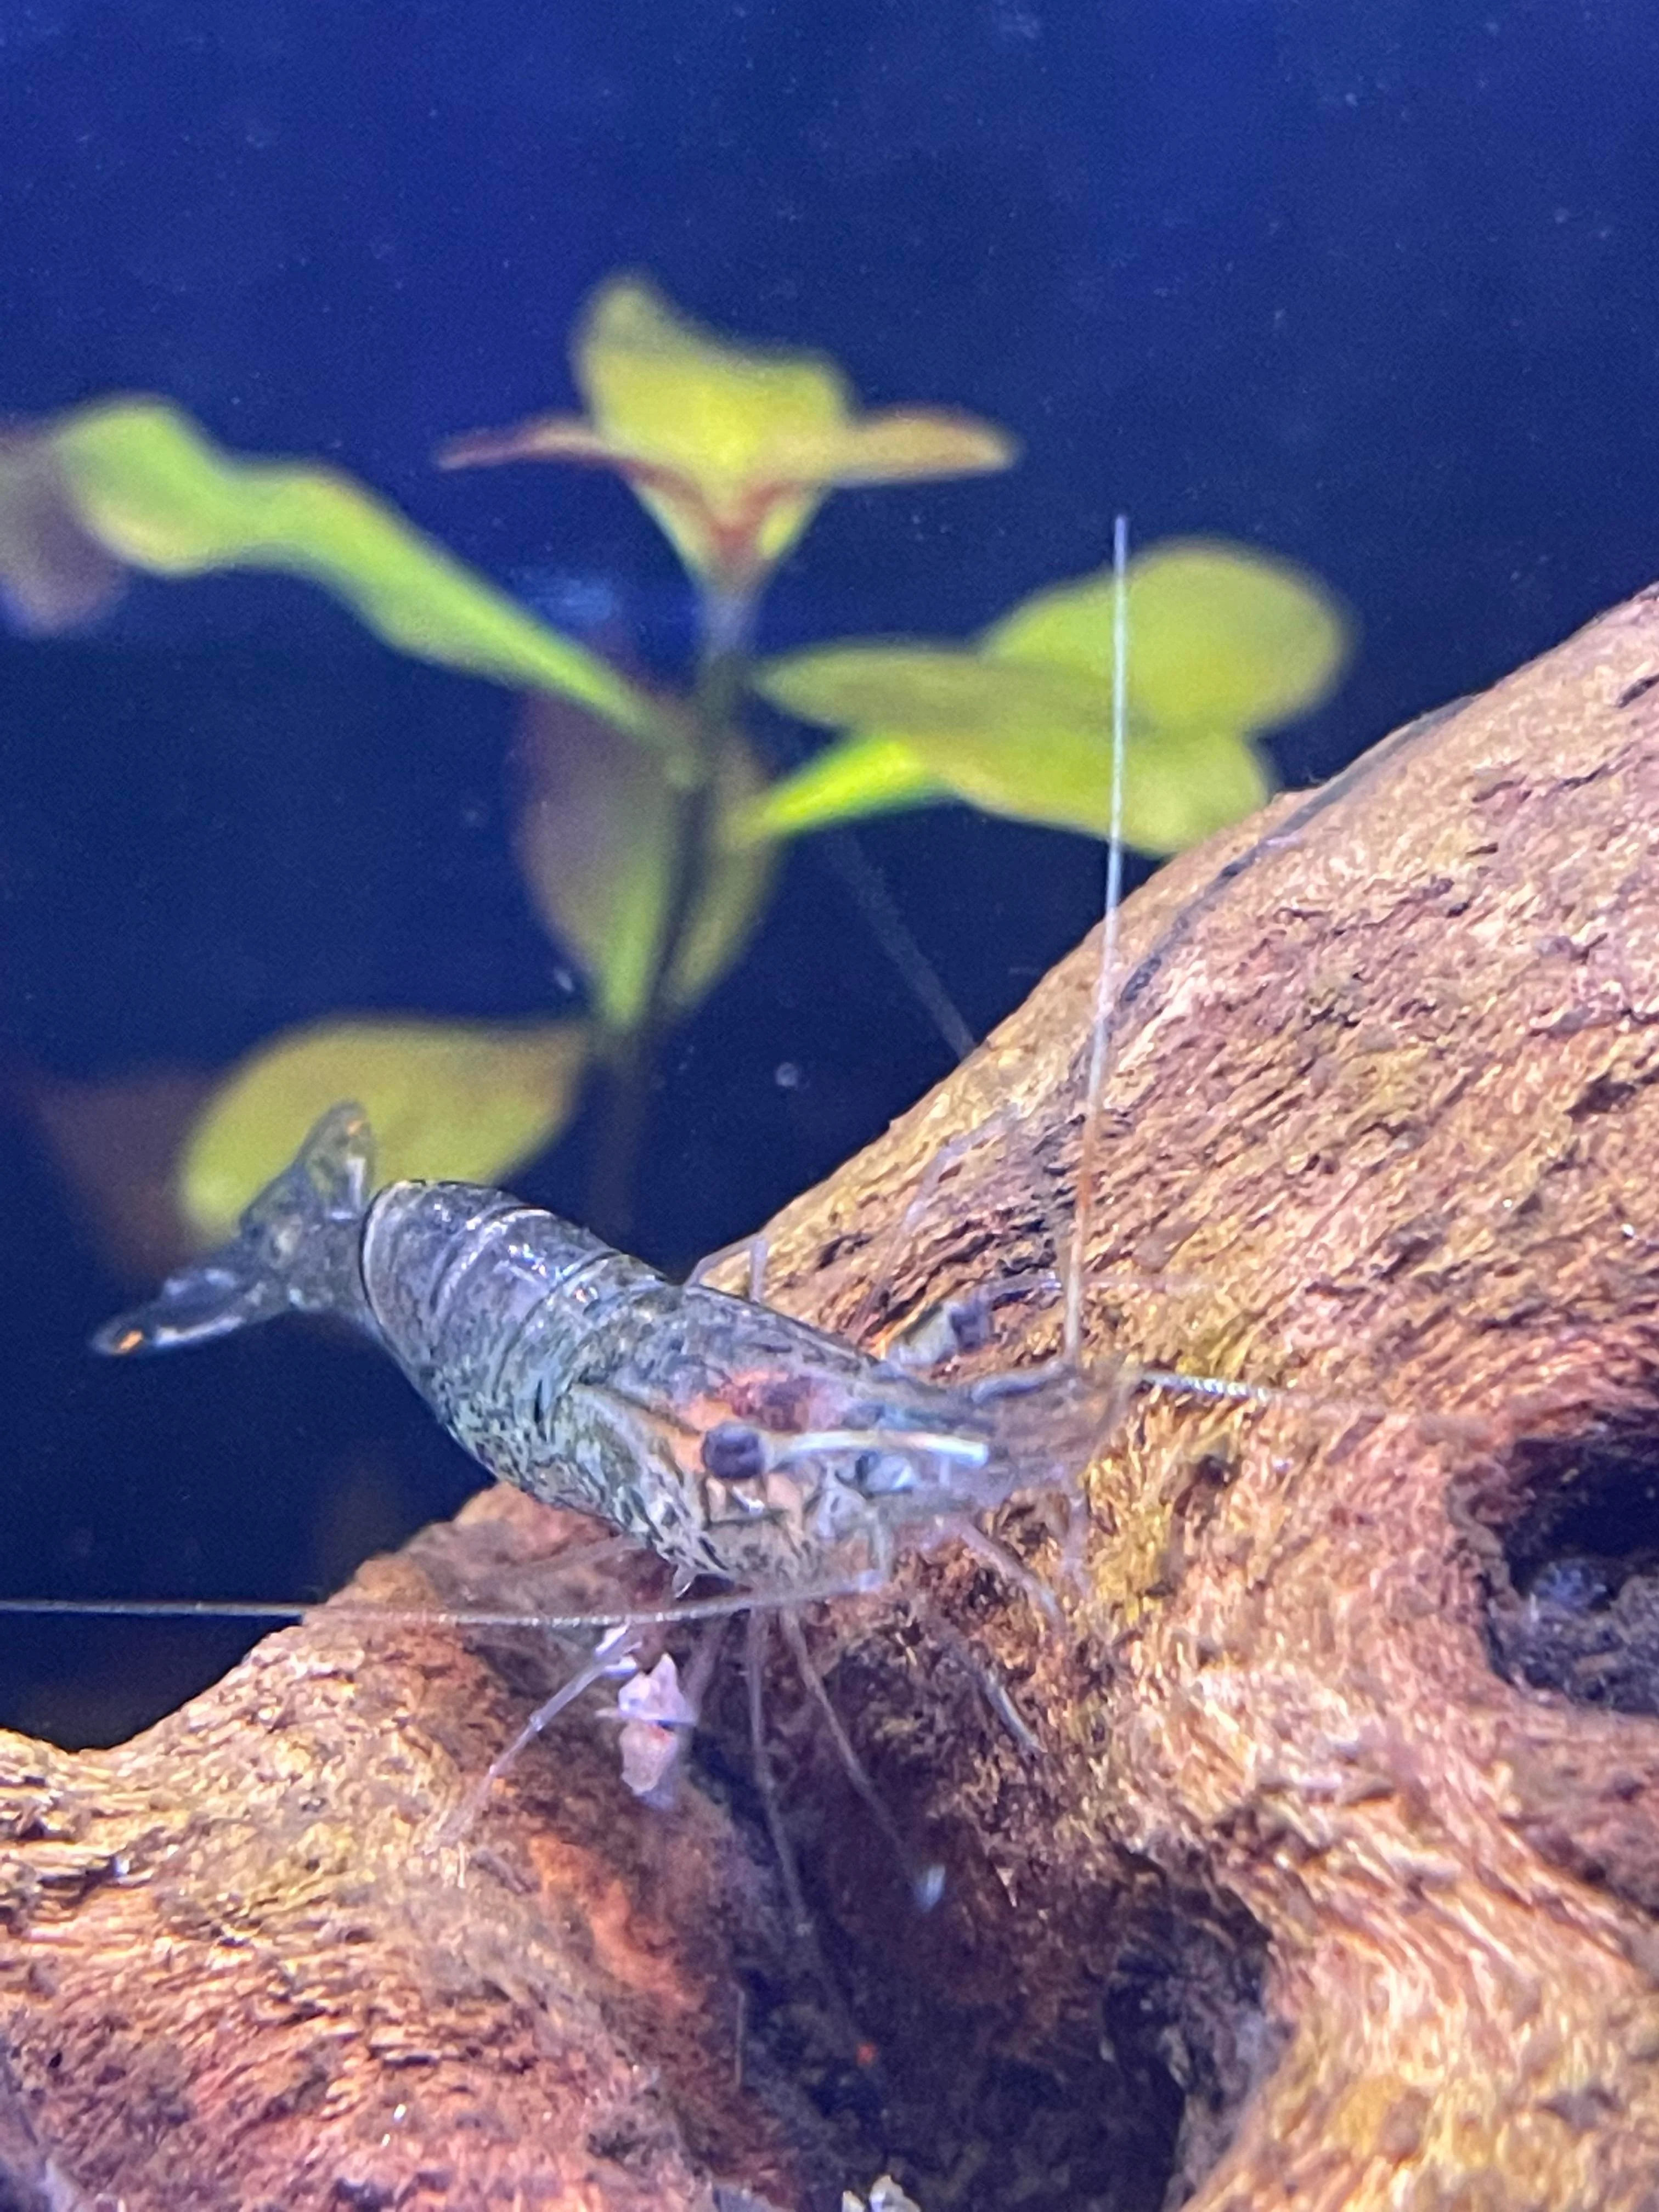 Ghost Shrimp prevention from Turning White